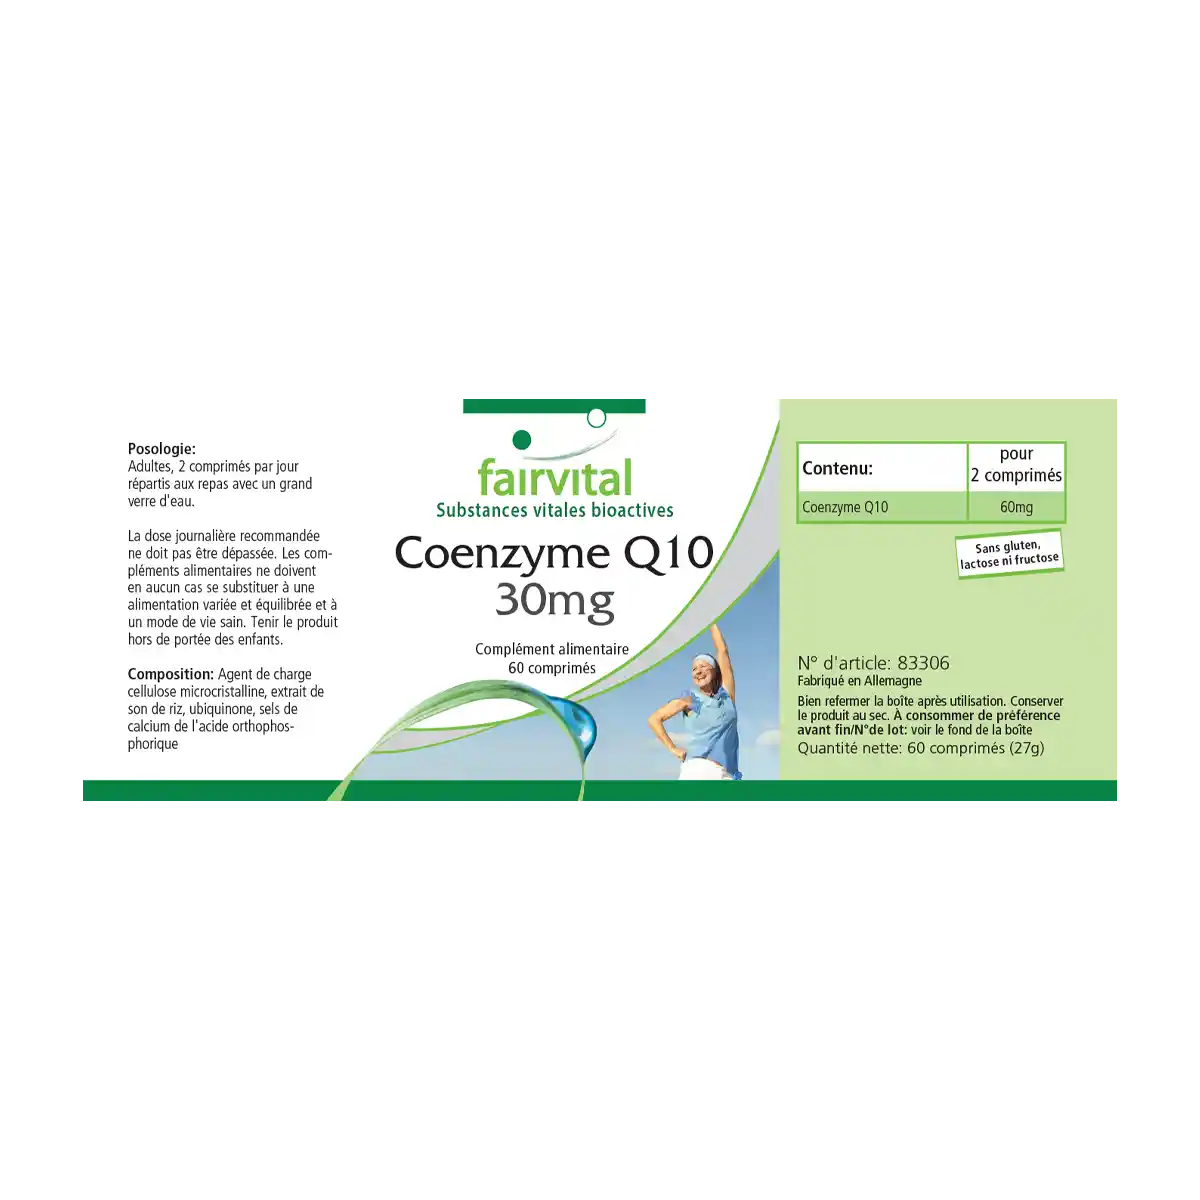 Coenzima Q10 – 30 mg – 60 compresse